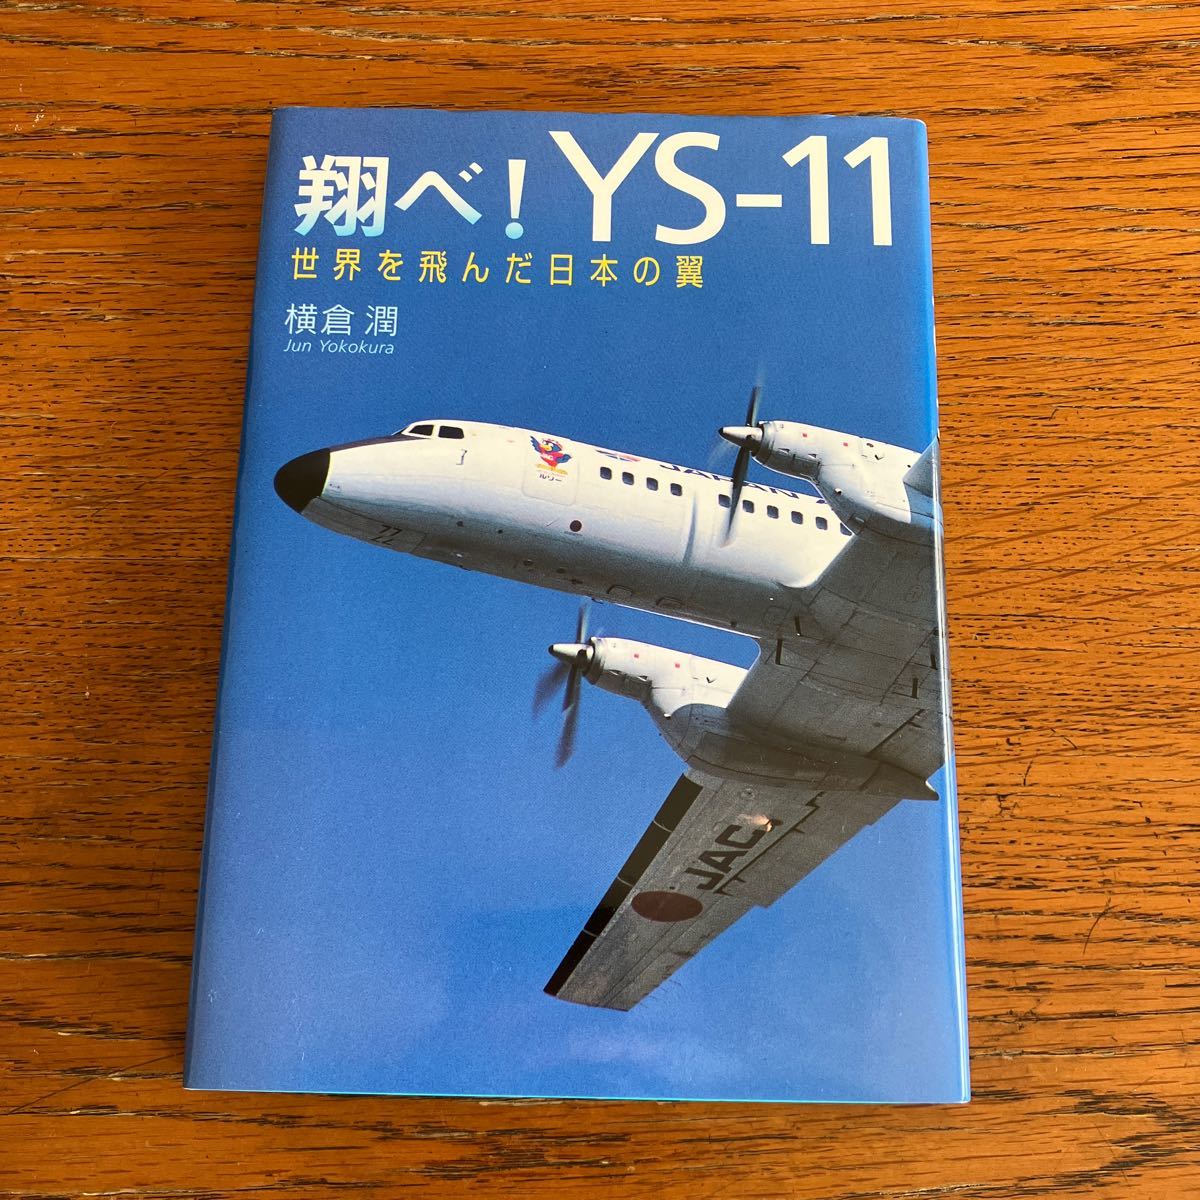 書籍『翔べ！YS-11 世界を飛んだ日本の翼』★小学館、横倉潤/著、2004年初版★日本航空機輸送/ANA/JAS/ANK/海上保安庁/自衛隊 他_画像1